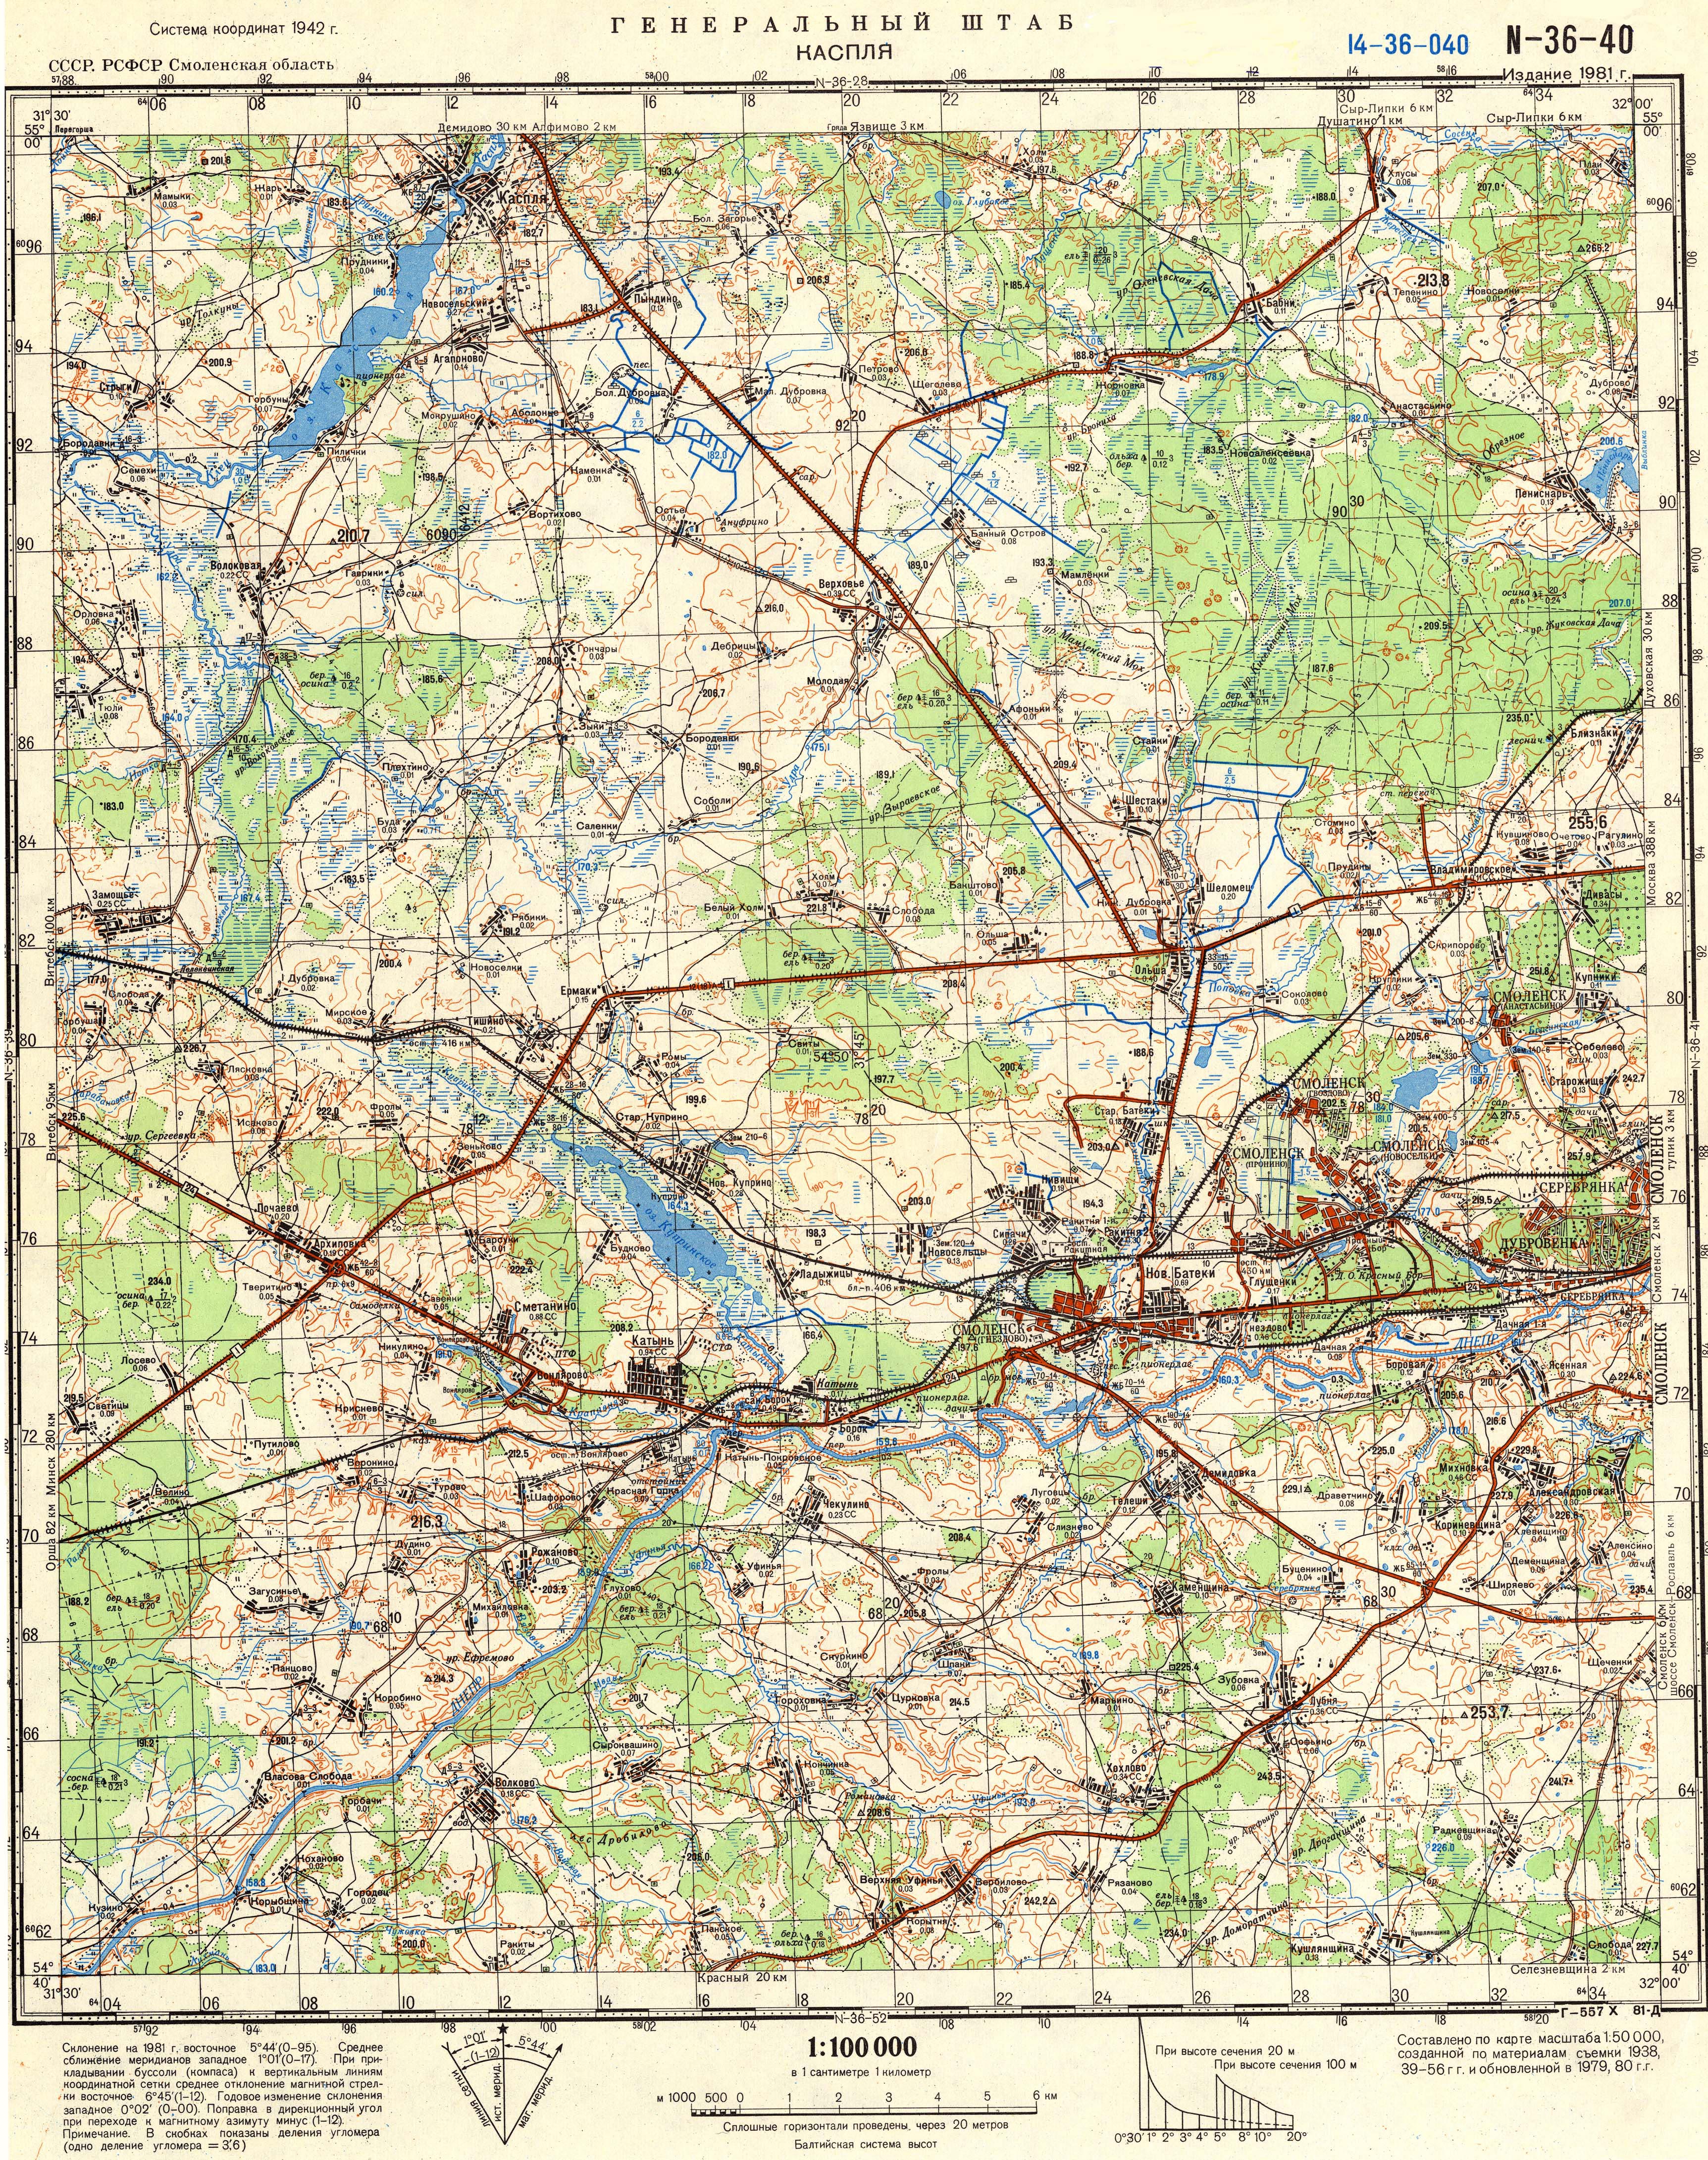 Топографические карты Генштаба / Карты листа N-36 (Смоленск) / Карты масштаба 1:100000 (километровки) / Лист N-36-40, Каспля 